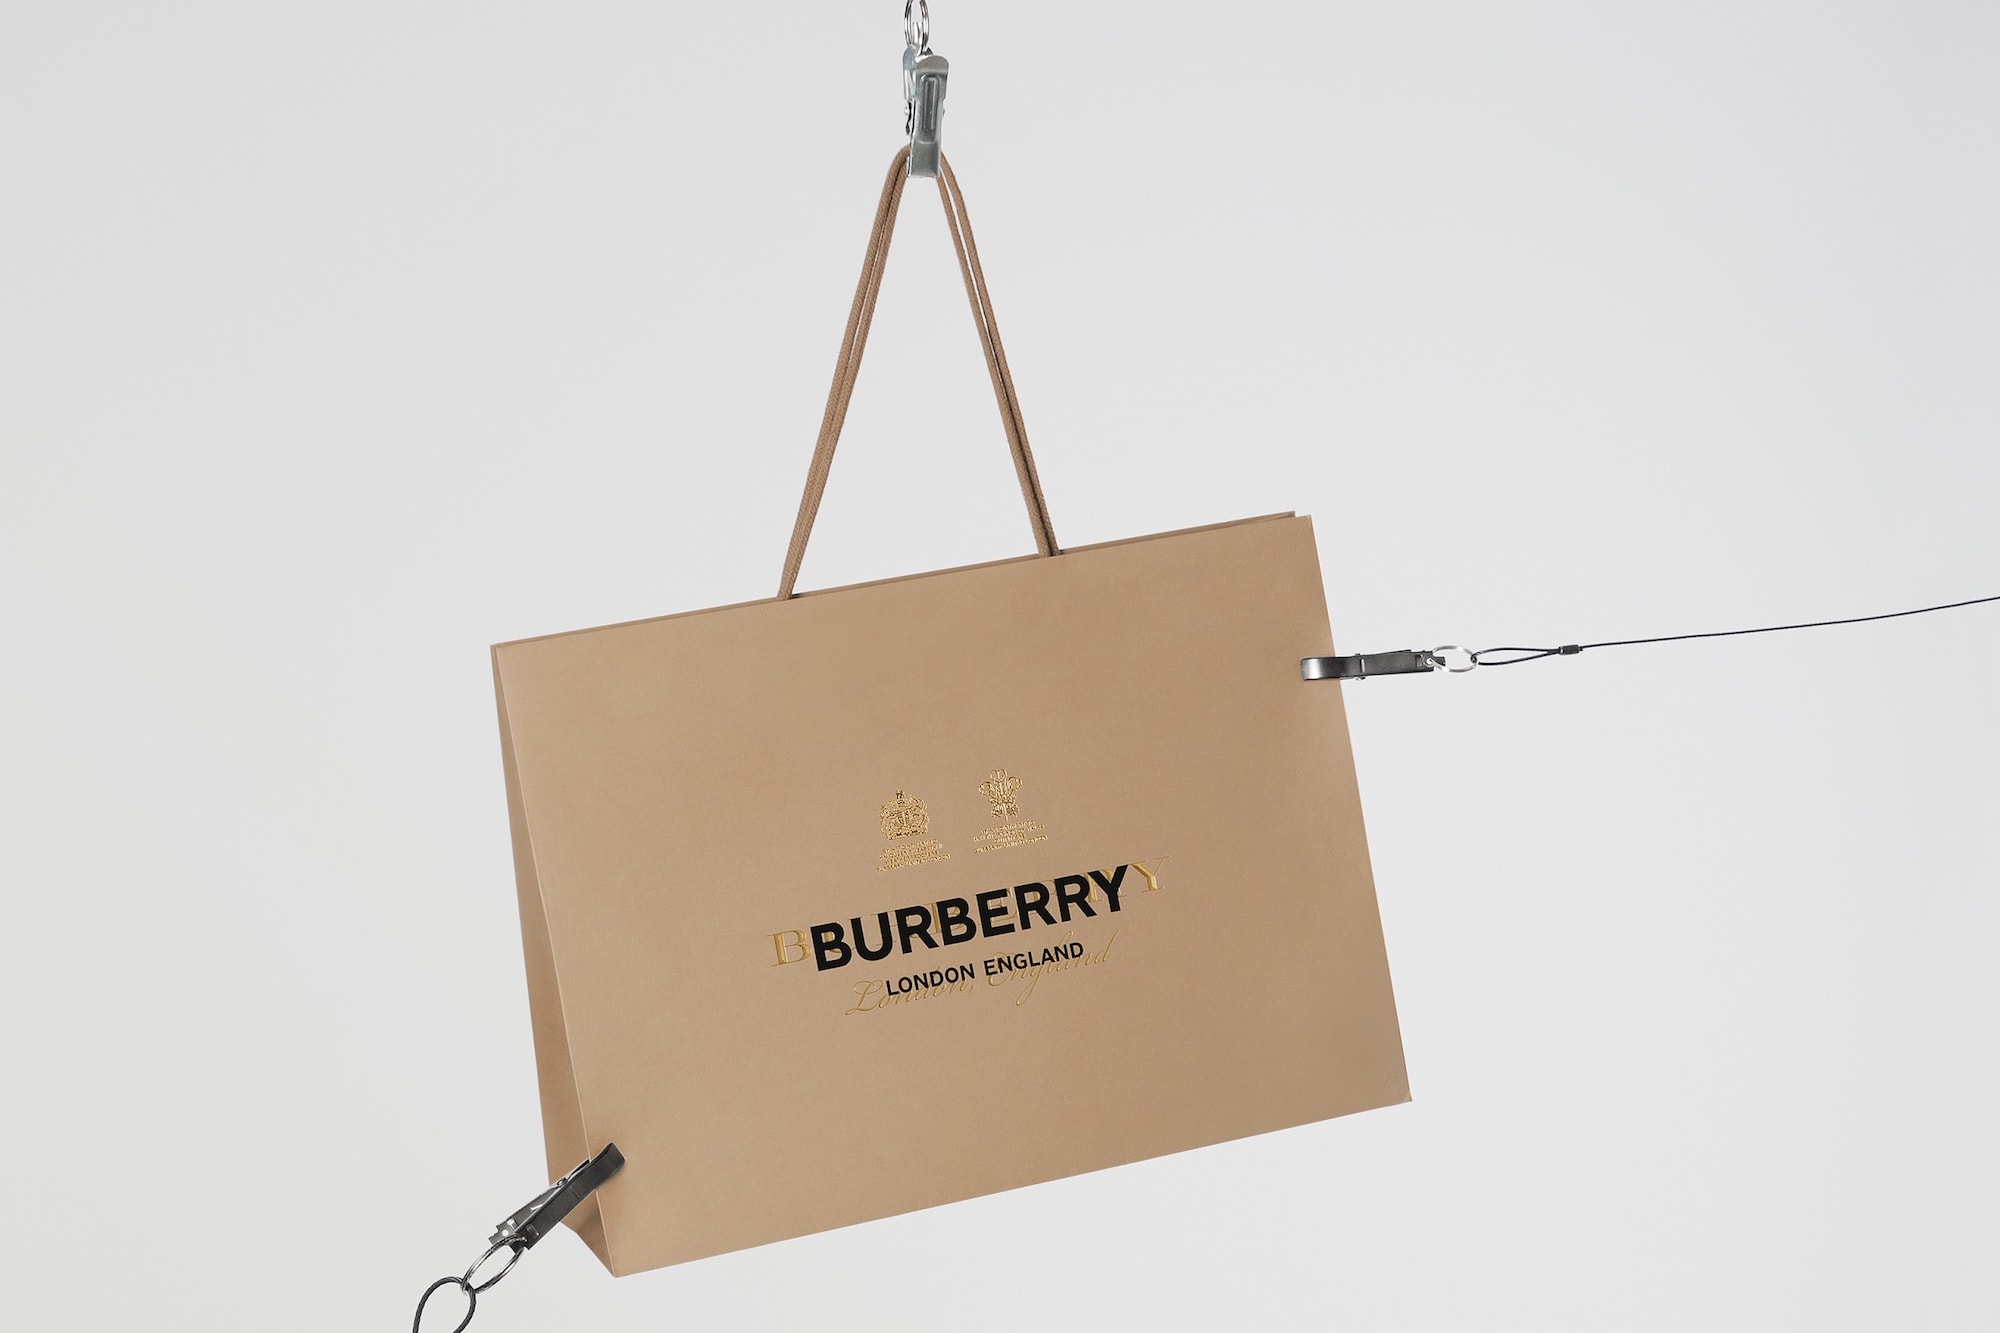 Burberry 宣佈 Riccardo Tisci 首個系列單品將以一系列「僅限 24 小時發售」的形式推出